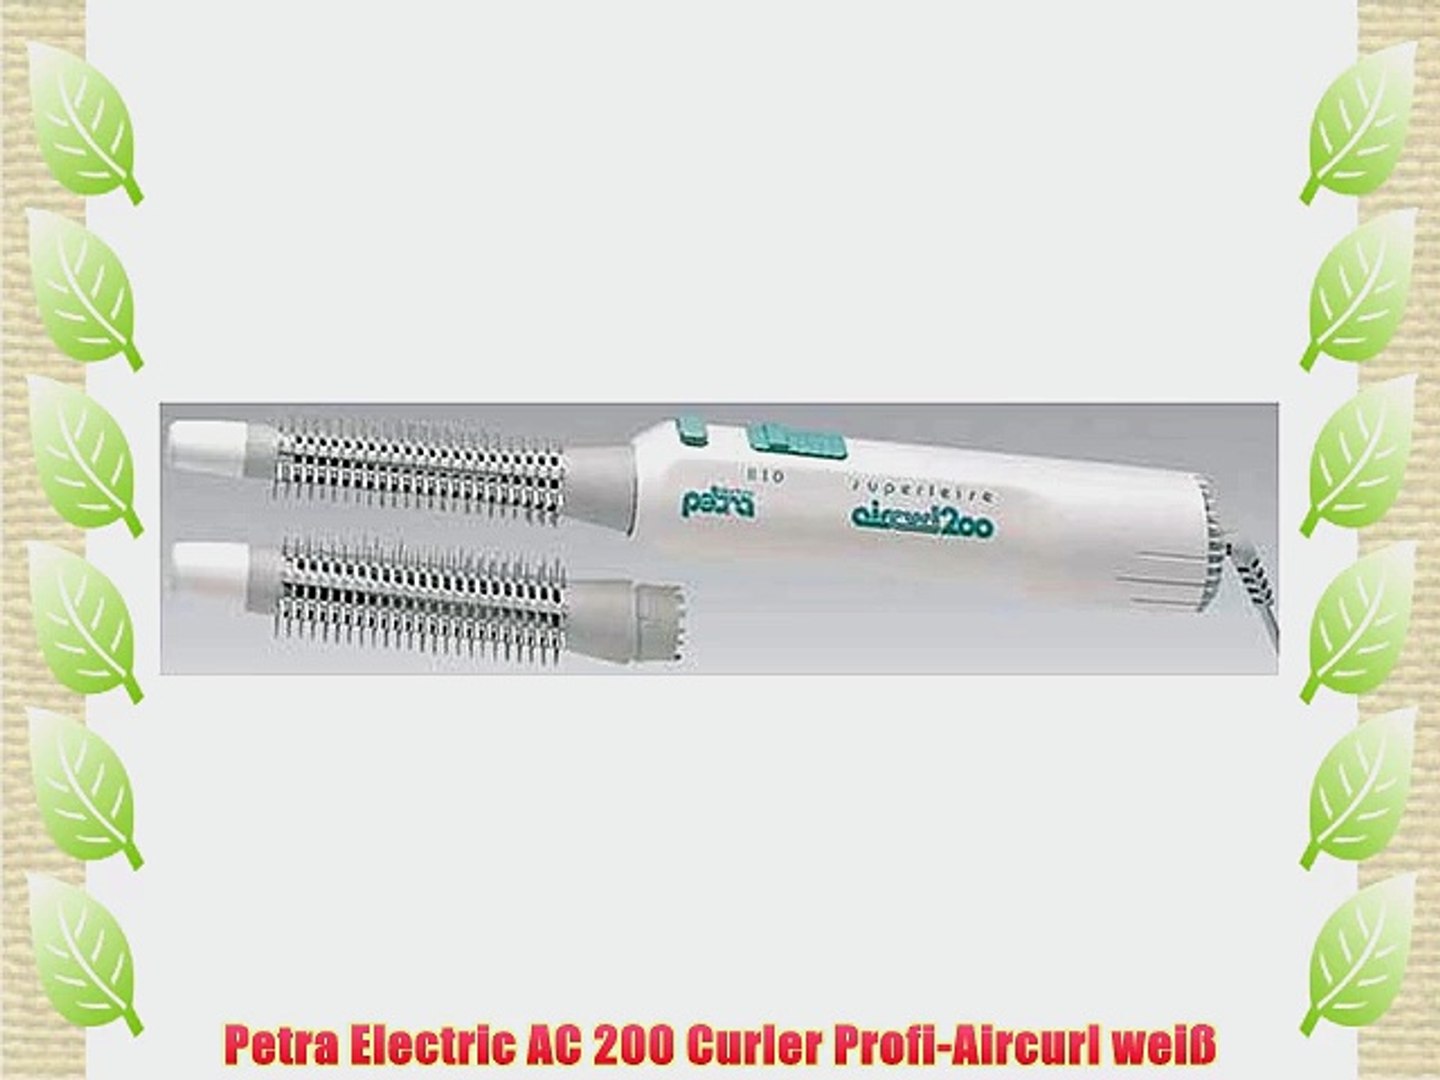 Petra Electric AC 200 Curler Profi-Aircurl wei? - video Dailymotion